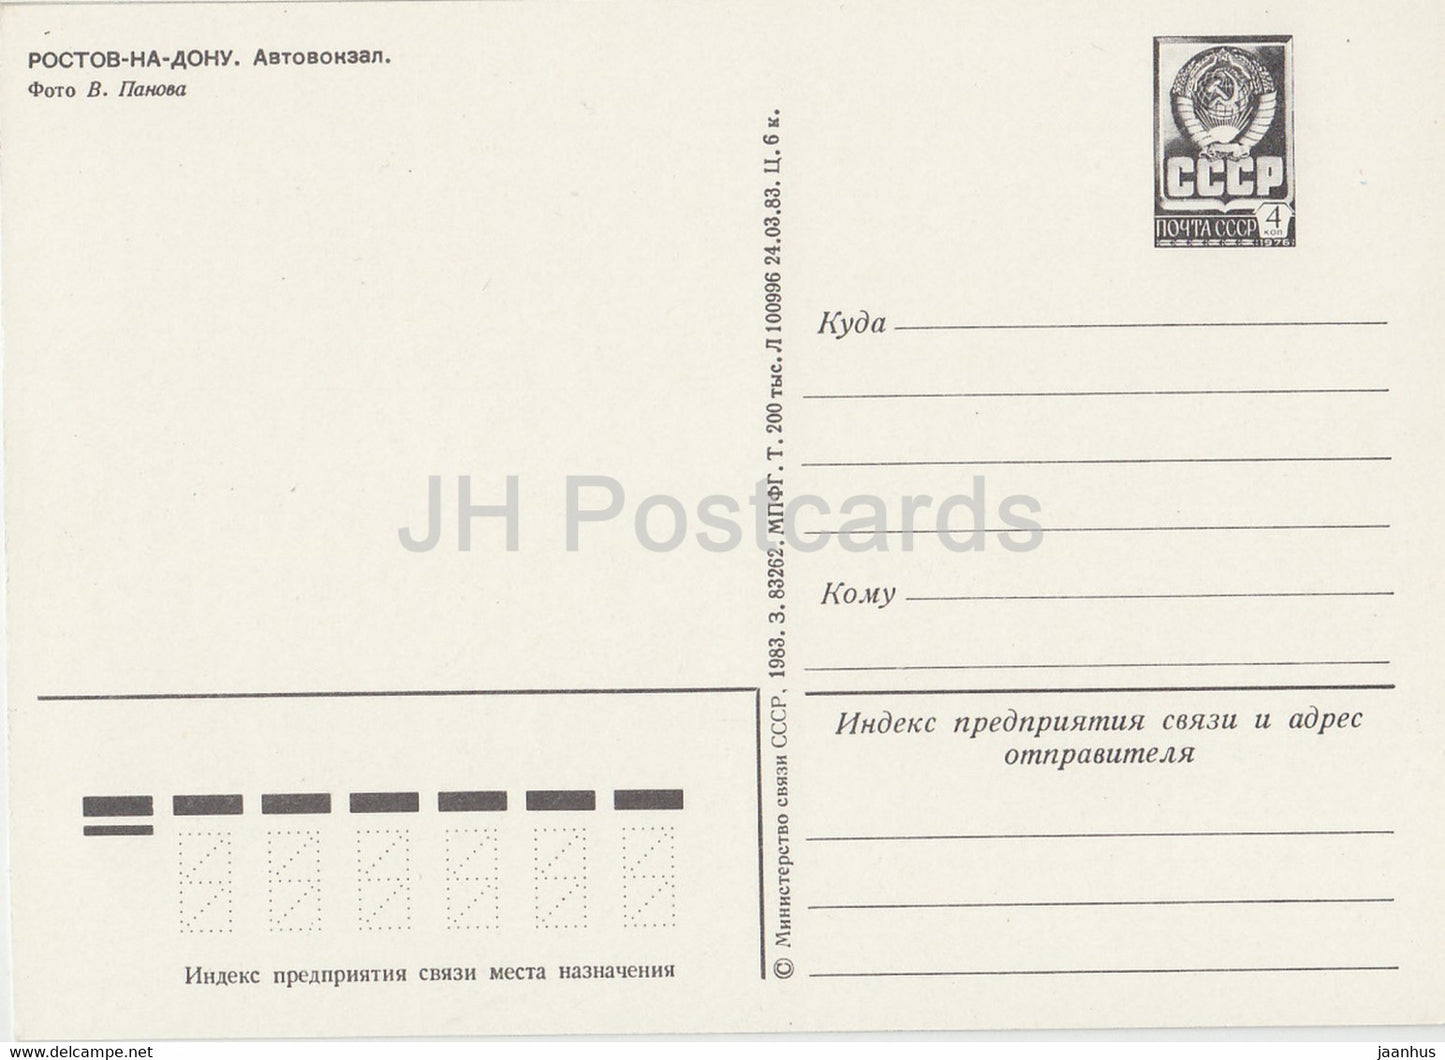 Rostov-sur-le-Don - gare routière - bus Ikarus - entier postal - 1983 - Russie URSS - inutilisé